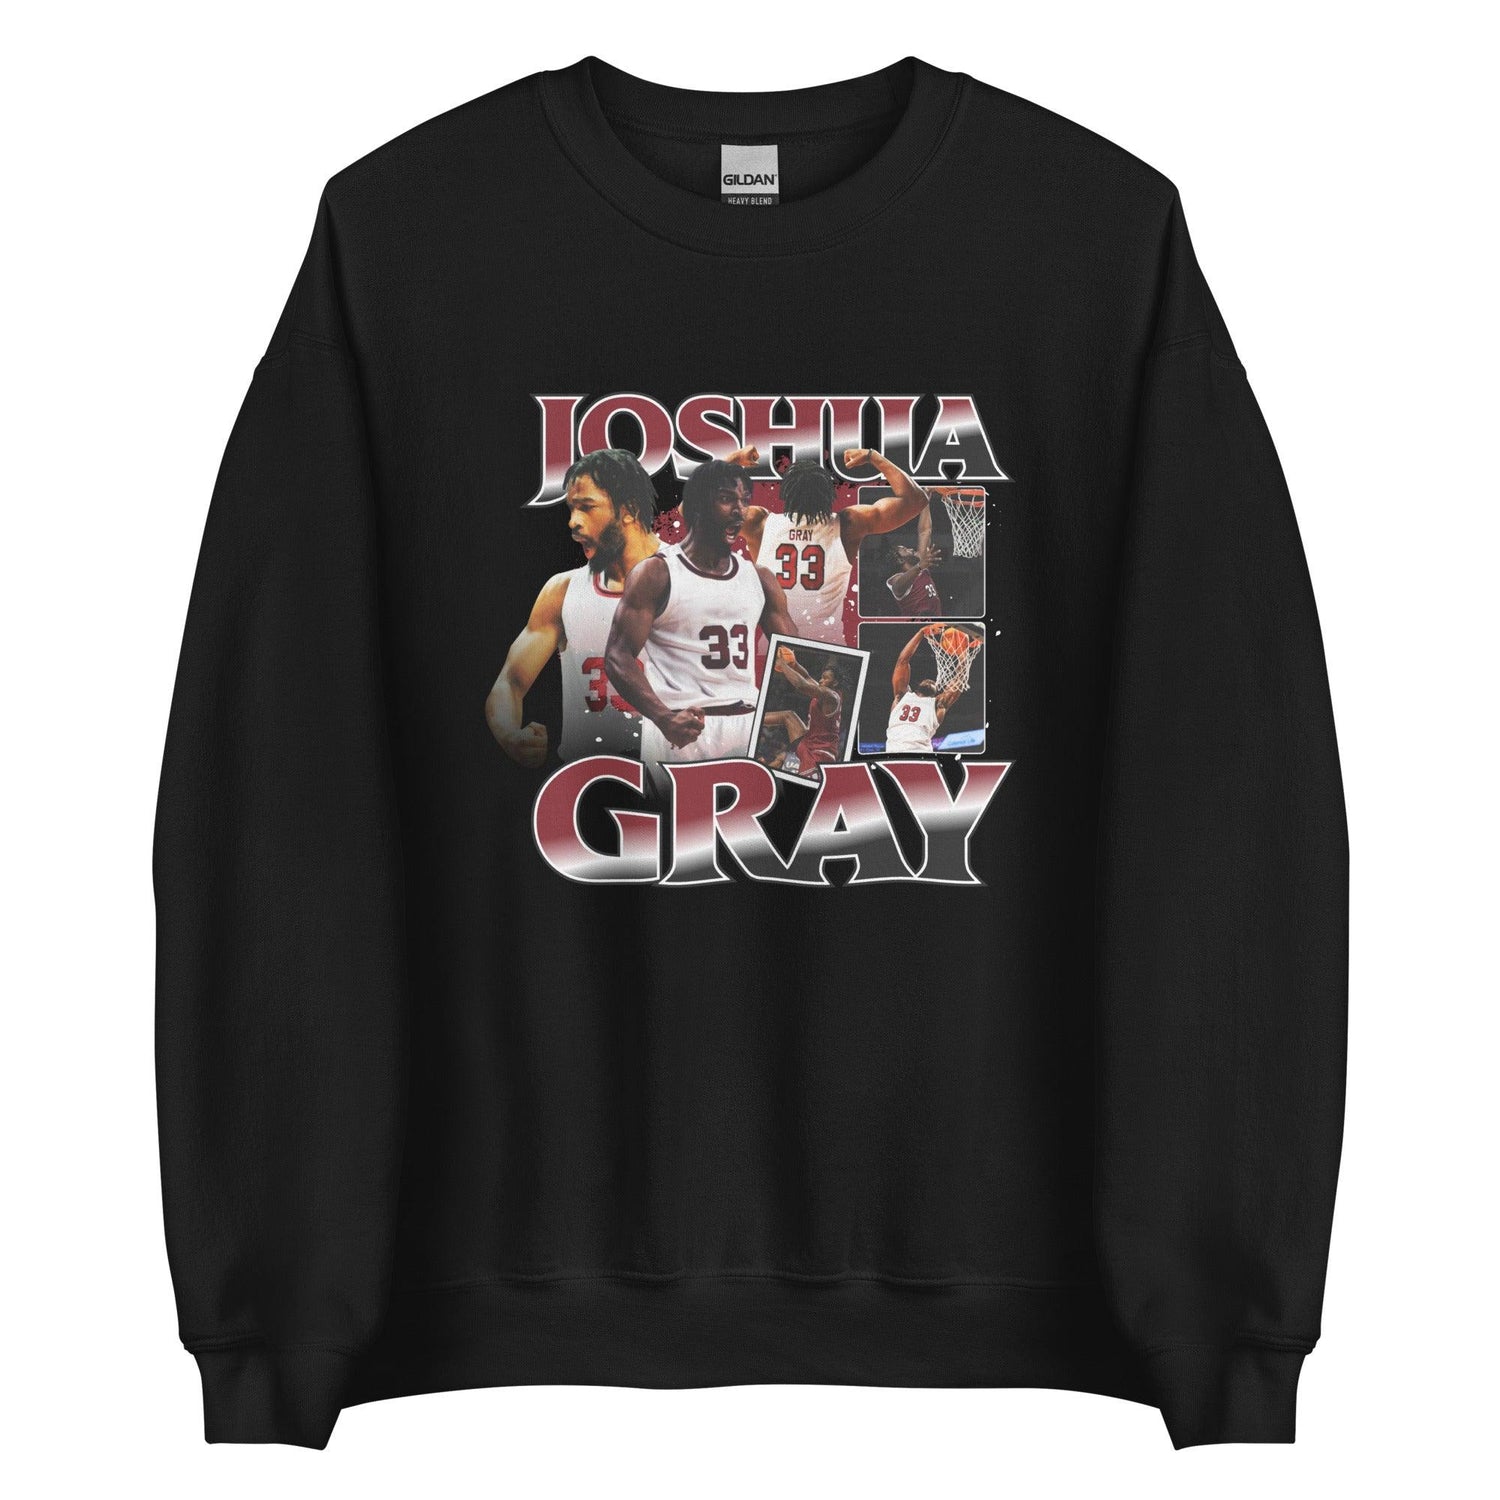 Joshua Gray "Vintage" Sweatshirt - Fan Arch